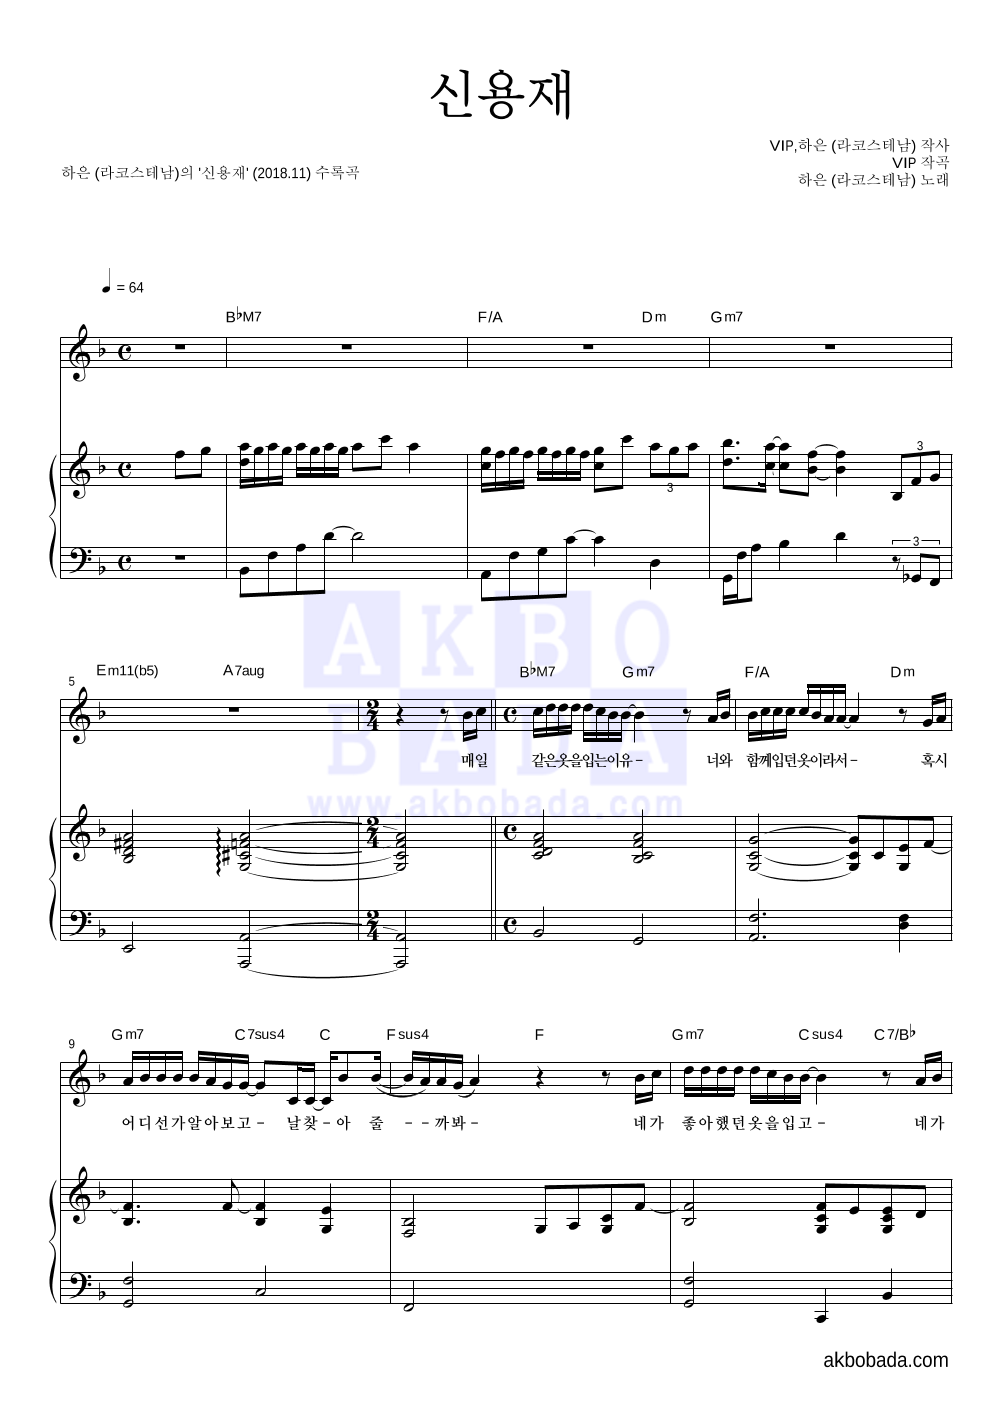 하은 - 신용재 피아노 3단 악보 